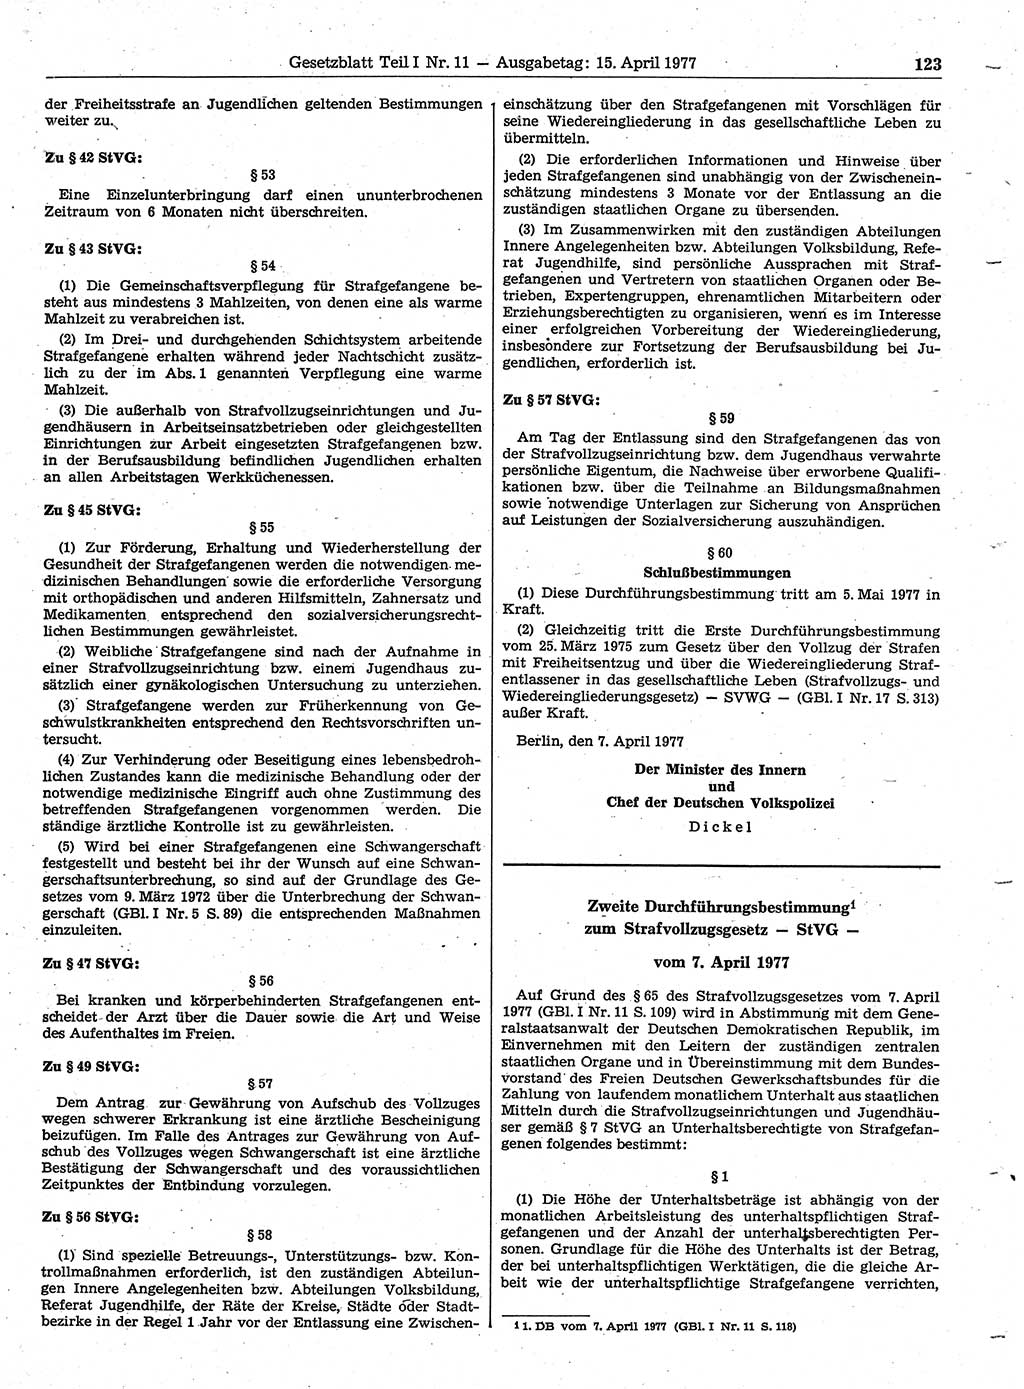 Gesetzblatt (GBl.) der Deutschen Demokratischen Republik (DDR) Teil Ⅰ 1977, Seite 123 (GBl. DDR Ⅰ 1977, S. 123)